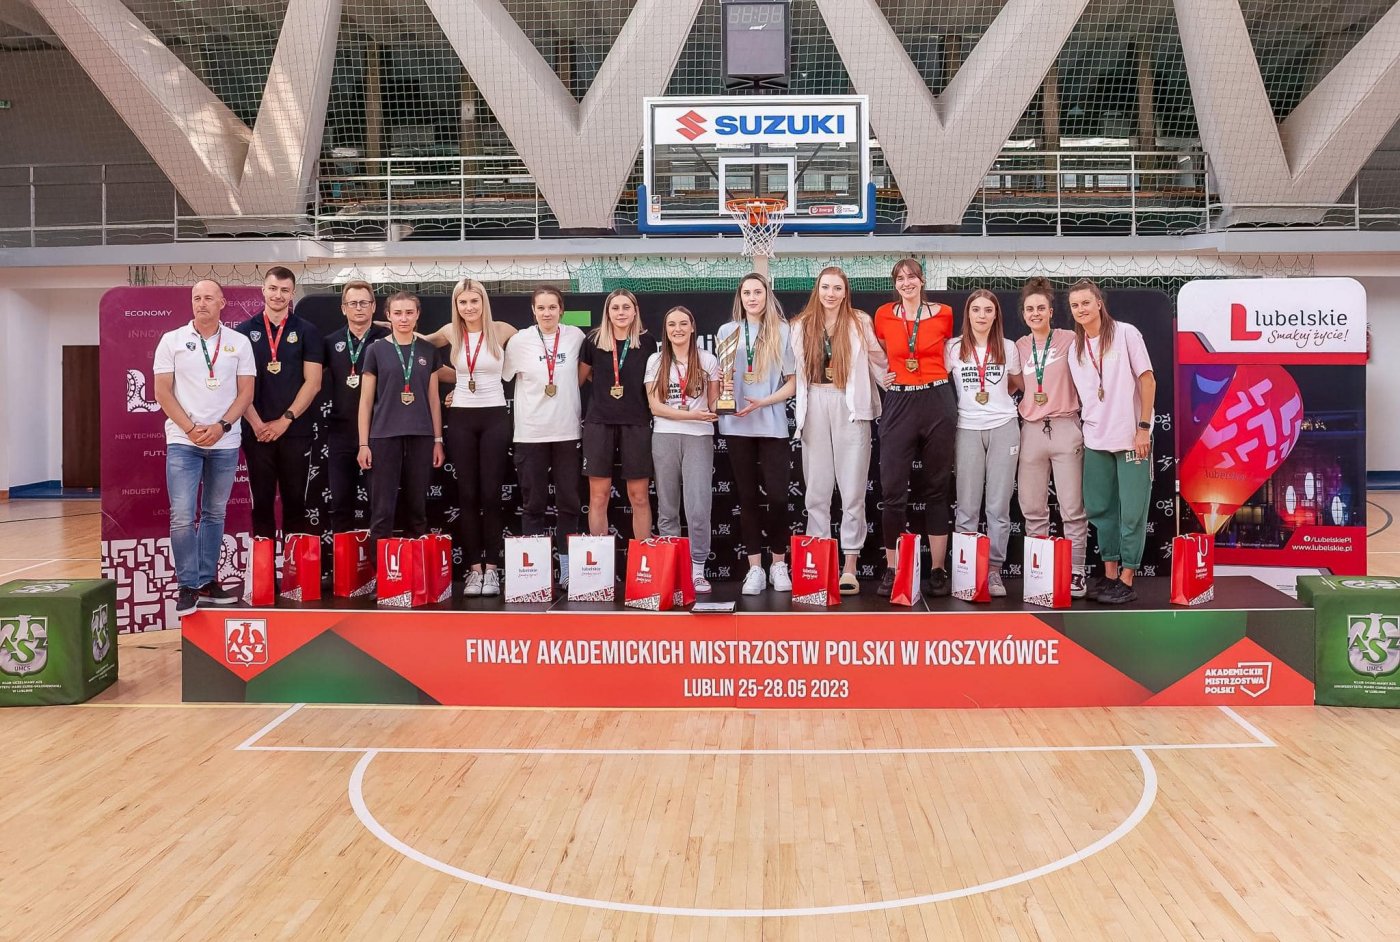 zawodnicy AMW Gdynia na podium odbierający nagrodę za zdobycie 1. miejsca w Akademickich Mistrzostwach Polski w koszykówce 5x5.